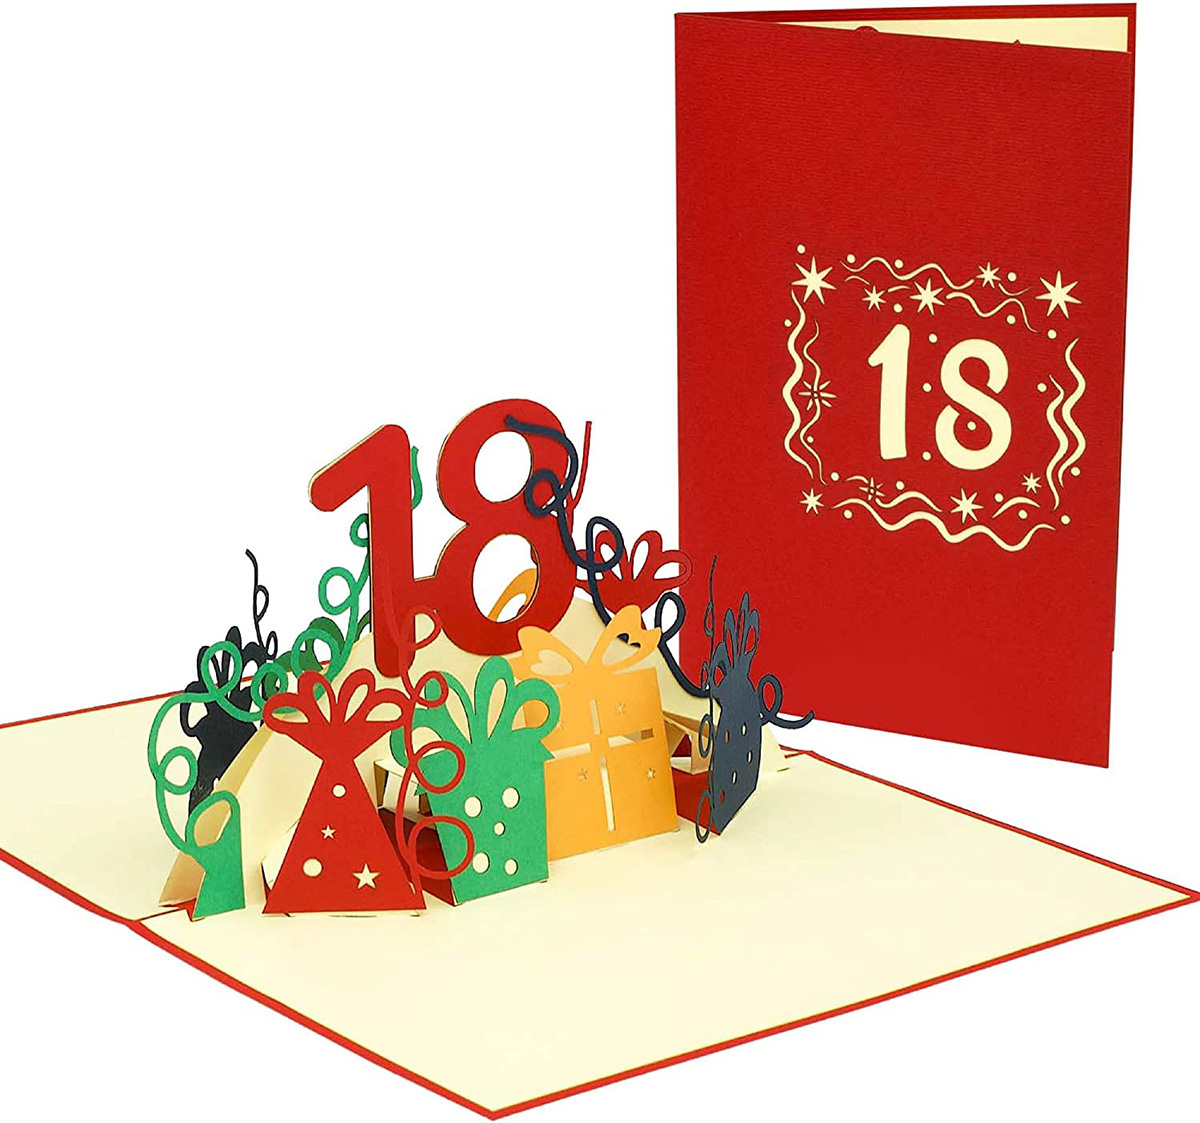 LINPOPUP POP UP 3D Karte, Geburtstagskarte 18 Jahre, Grußkarten Geburtstag 18, Pop - Up Karte, POP UP Karten Geburtstag, Hochzeitstag 18 Jahre, Jubiläum 18 Jahre, LIN17639, LINPopUp®, N371